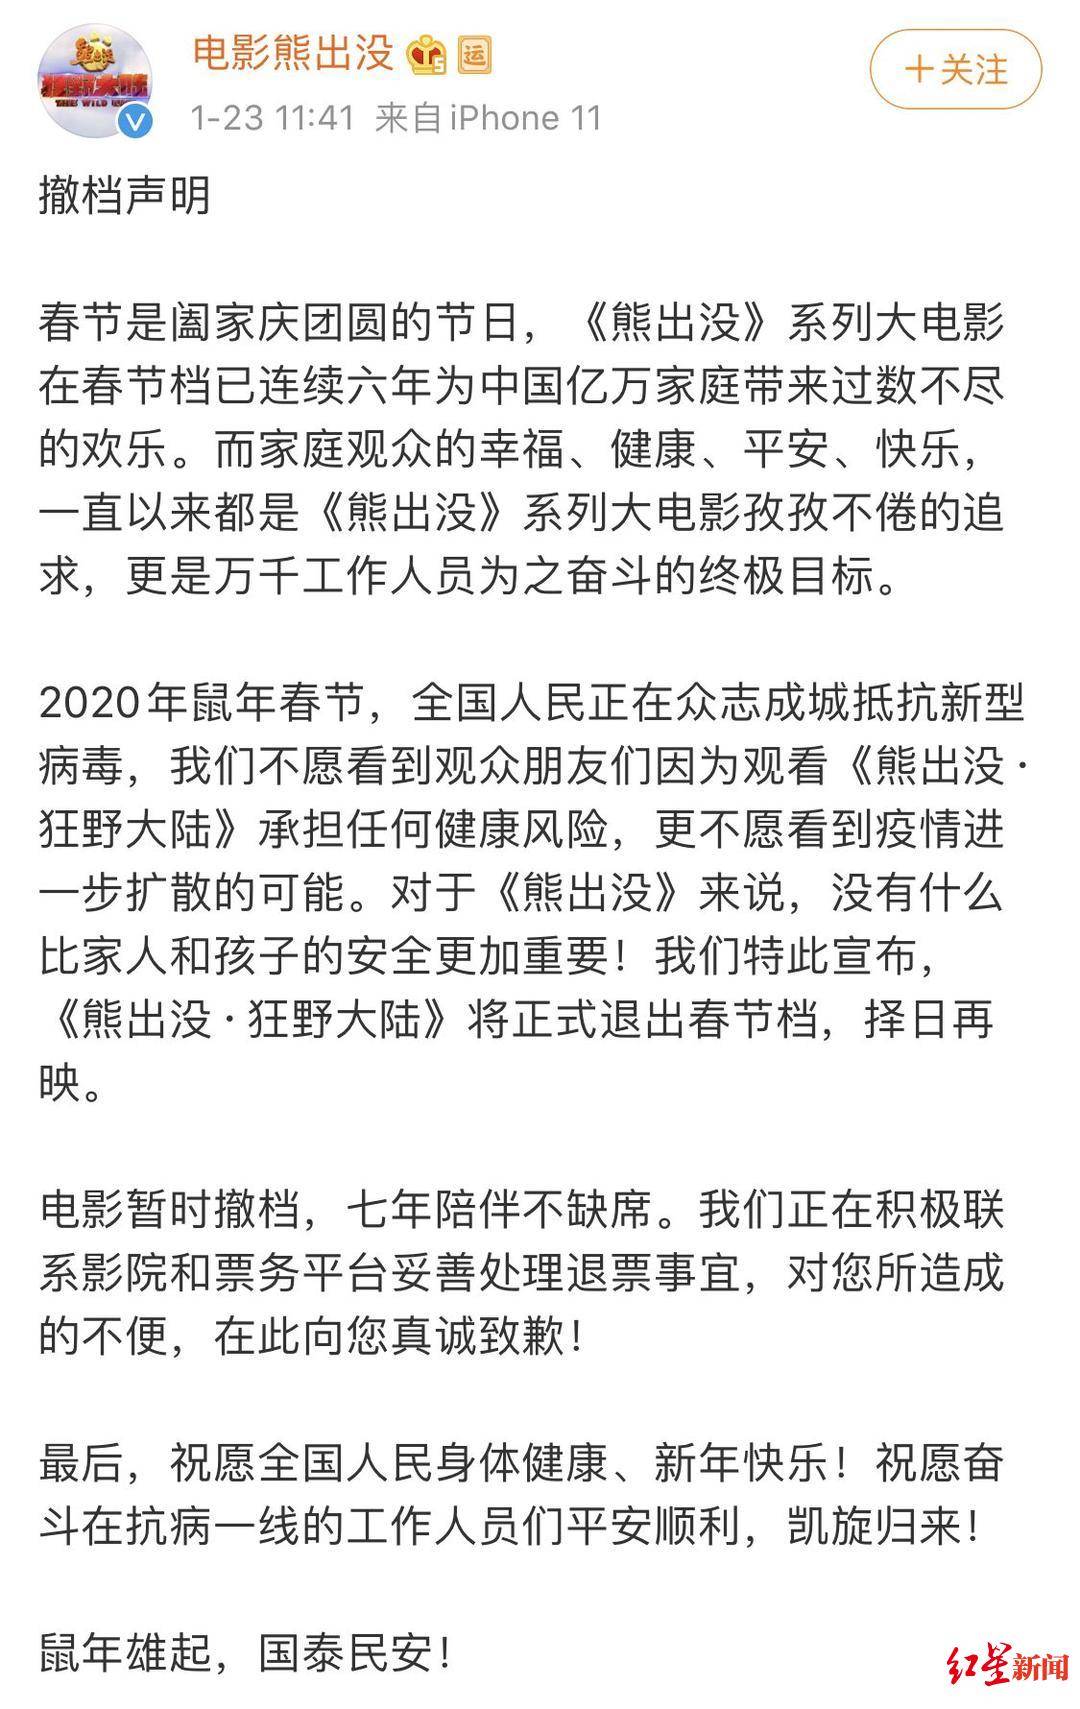 《熊出没·狂野大陆》发布撤档声明 宣布正式KK体育退出春节档(图1)